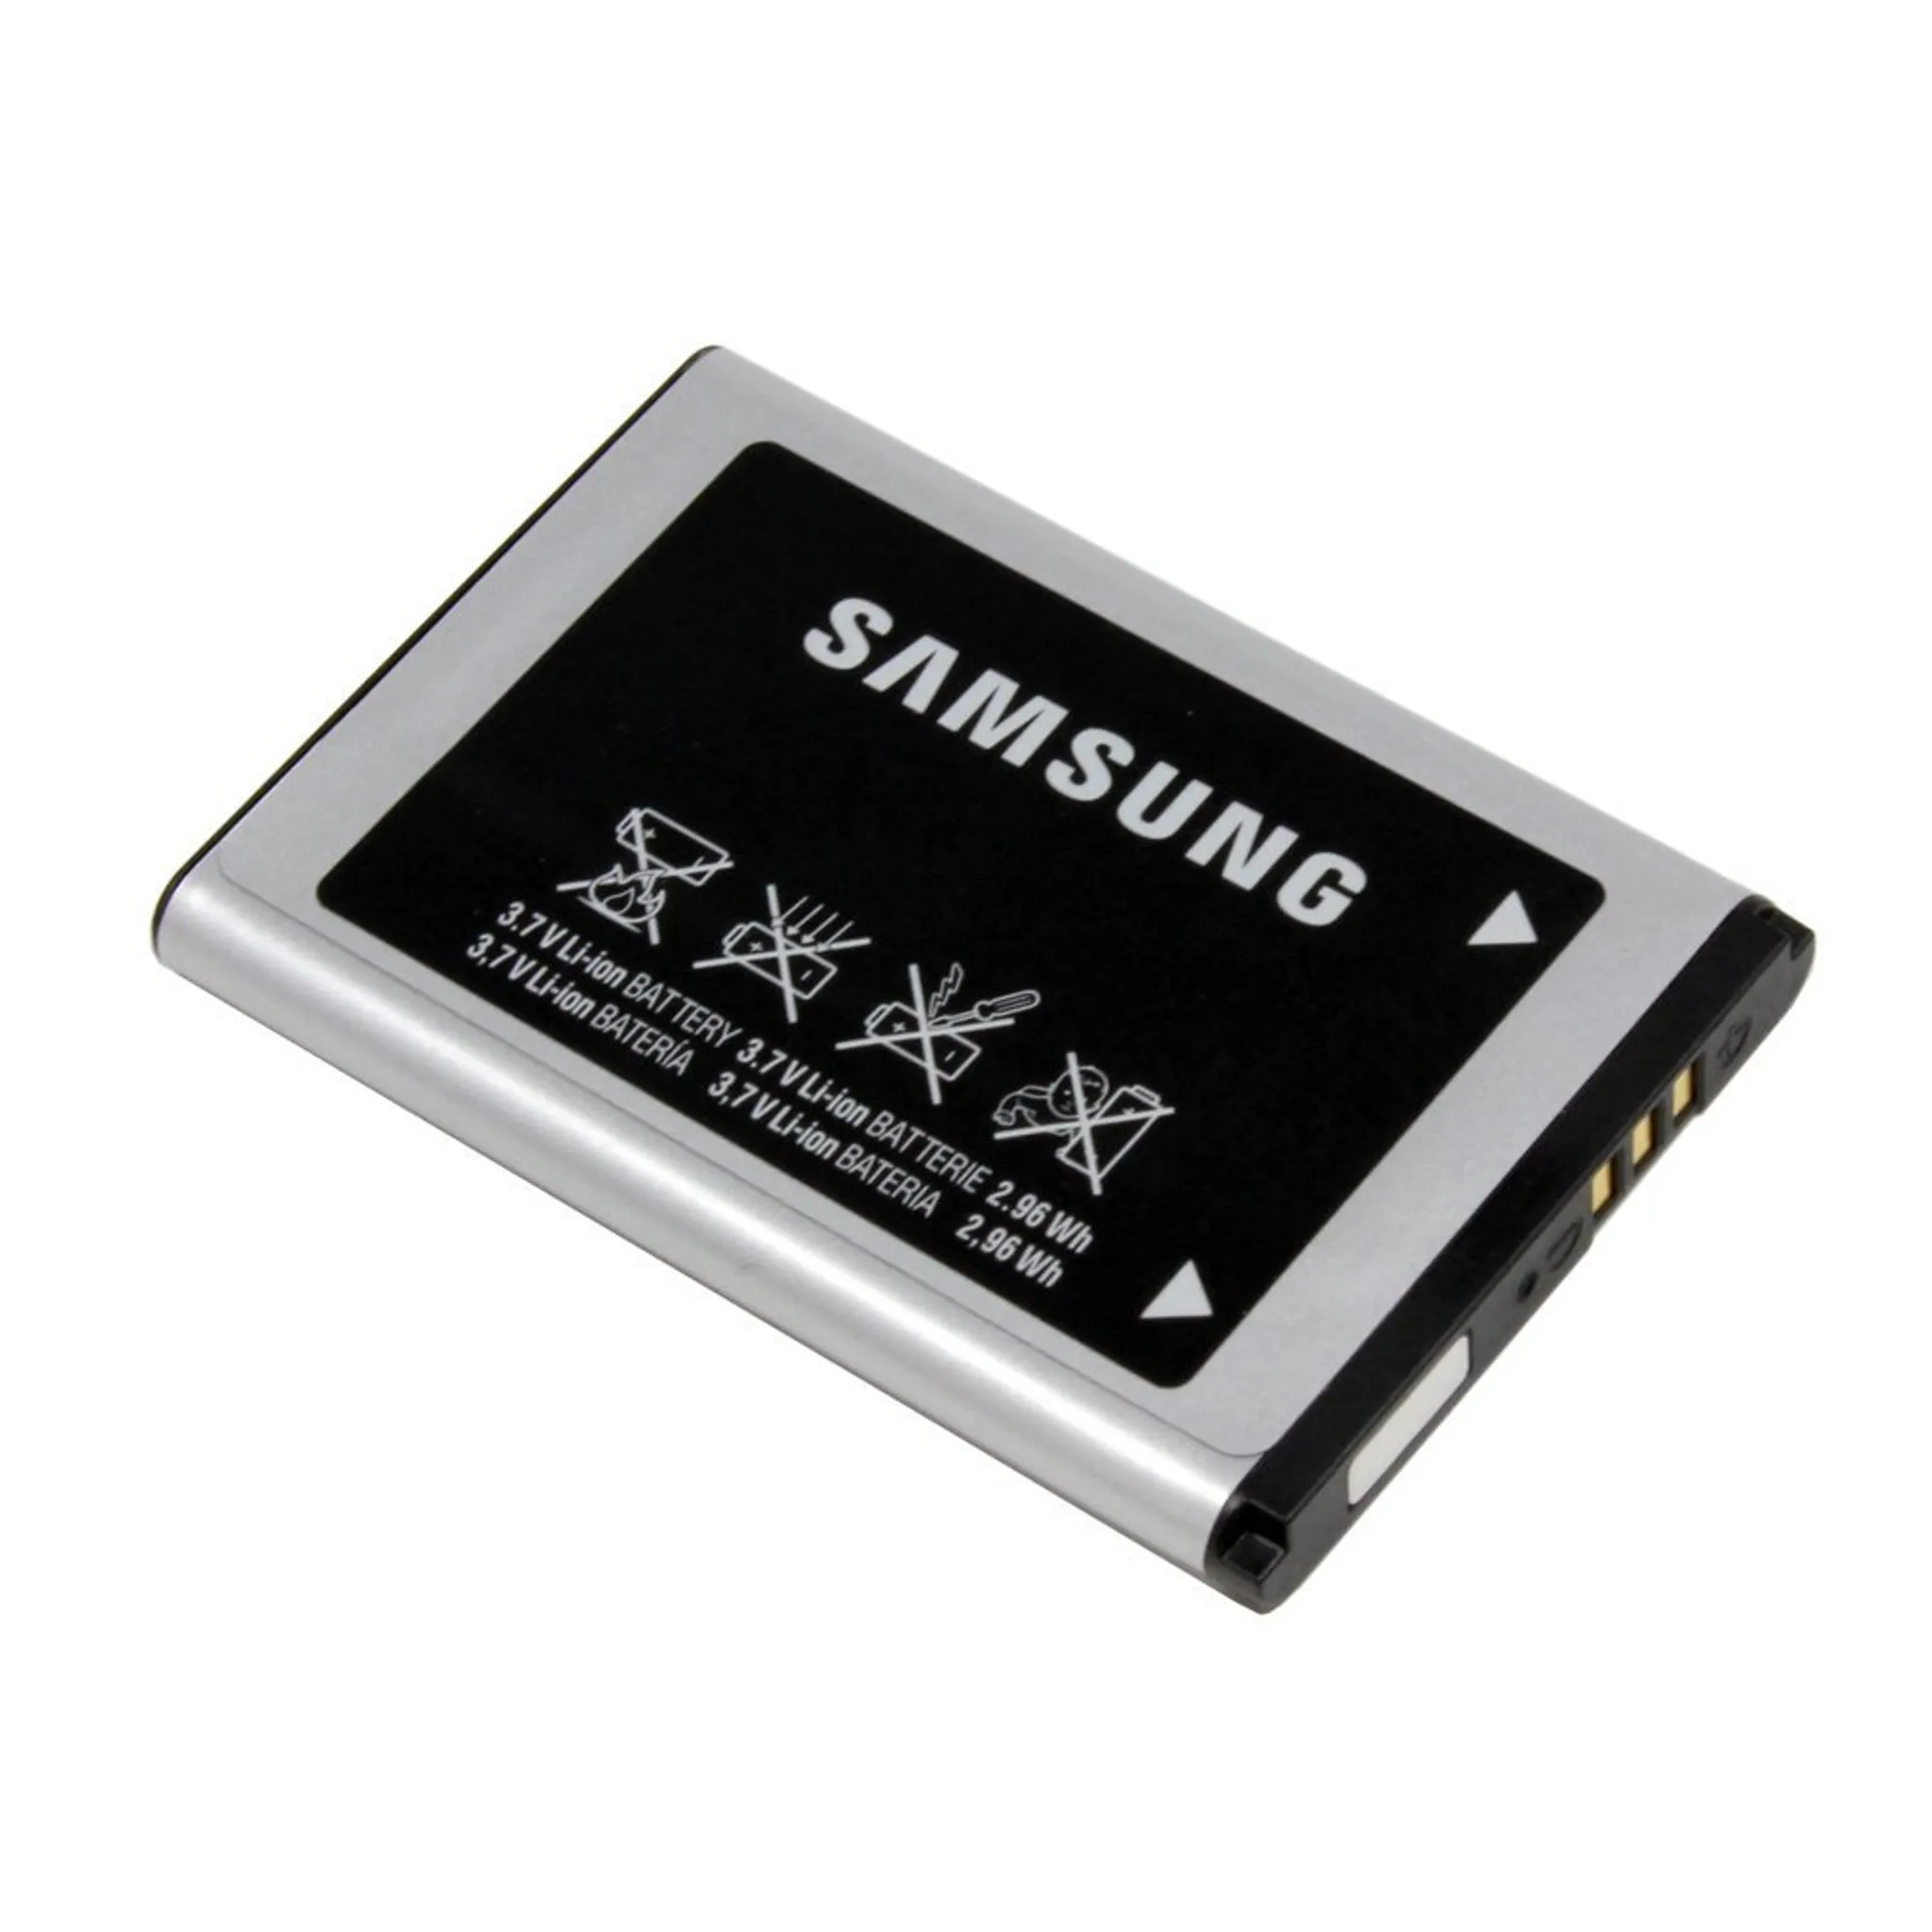 Samsung batteries. Аккумулятор Samsung x200 (ab463446bu) (c3010/e1232/e1070/e1080) (800mah). Samsung ab463446bu. Samsung АКБ 800mah. Samsung gt-e1200 аккумулятор.